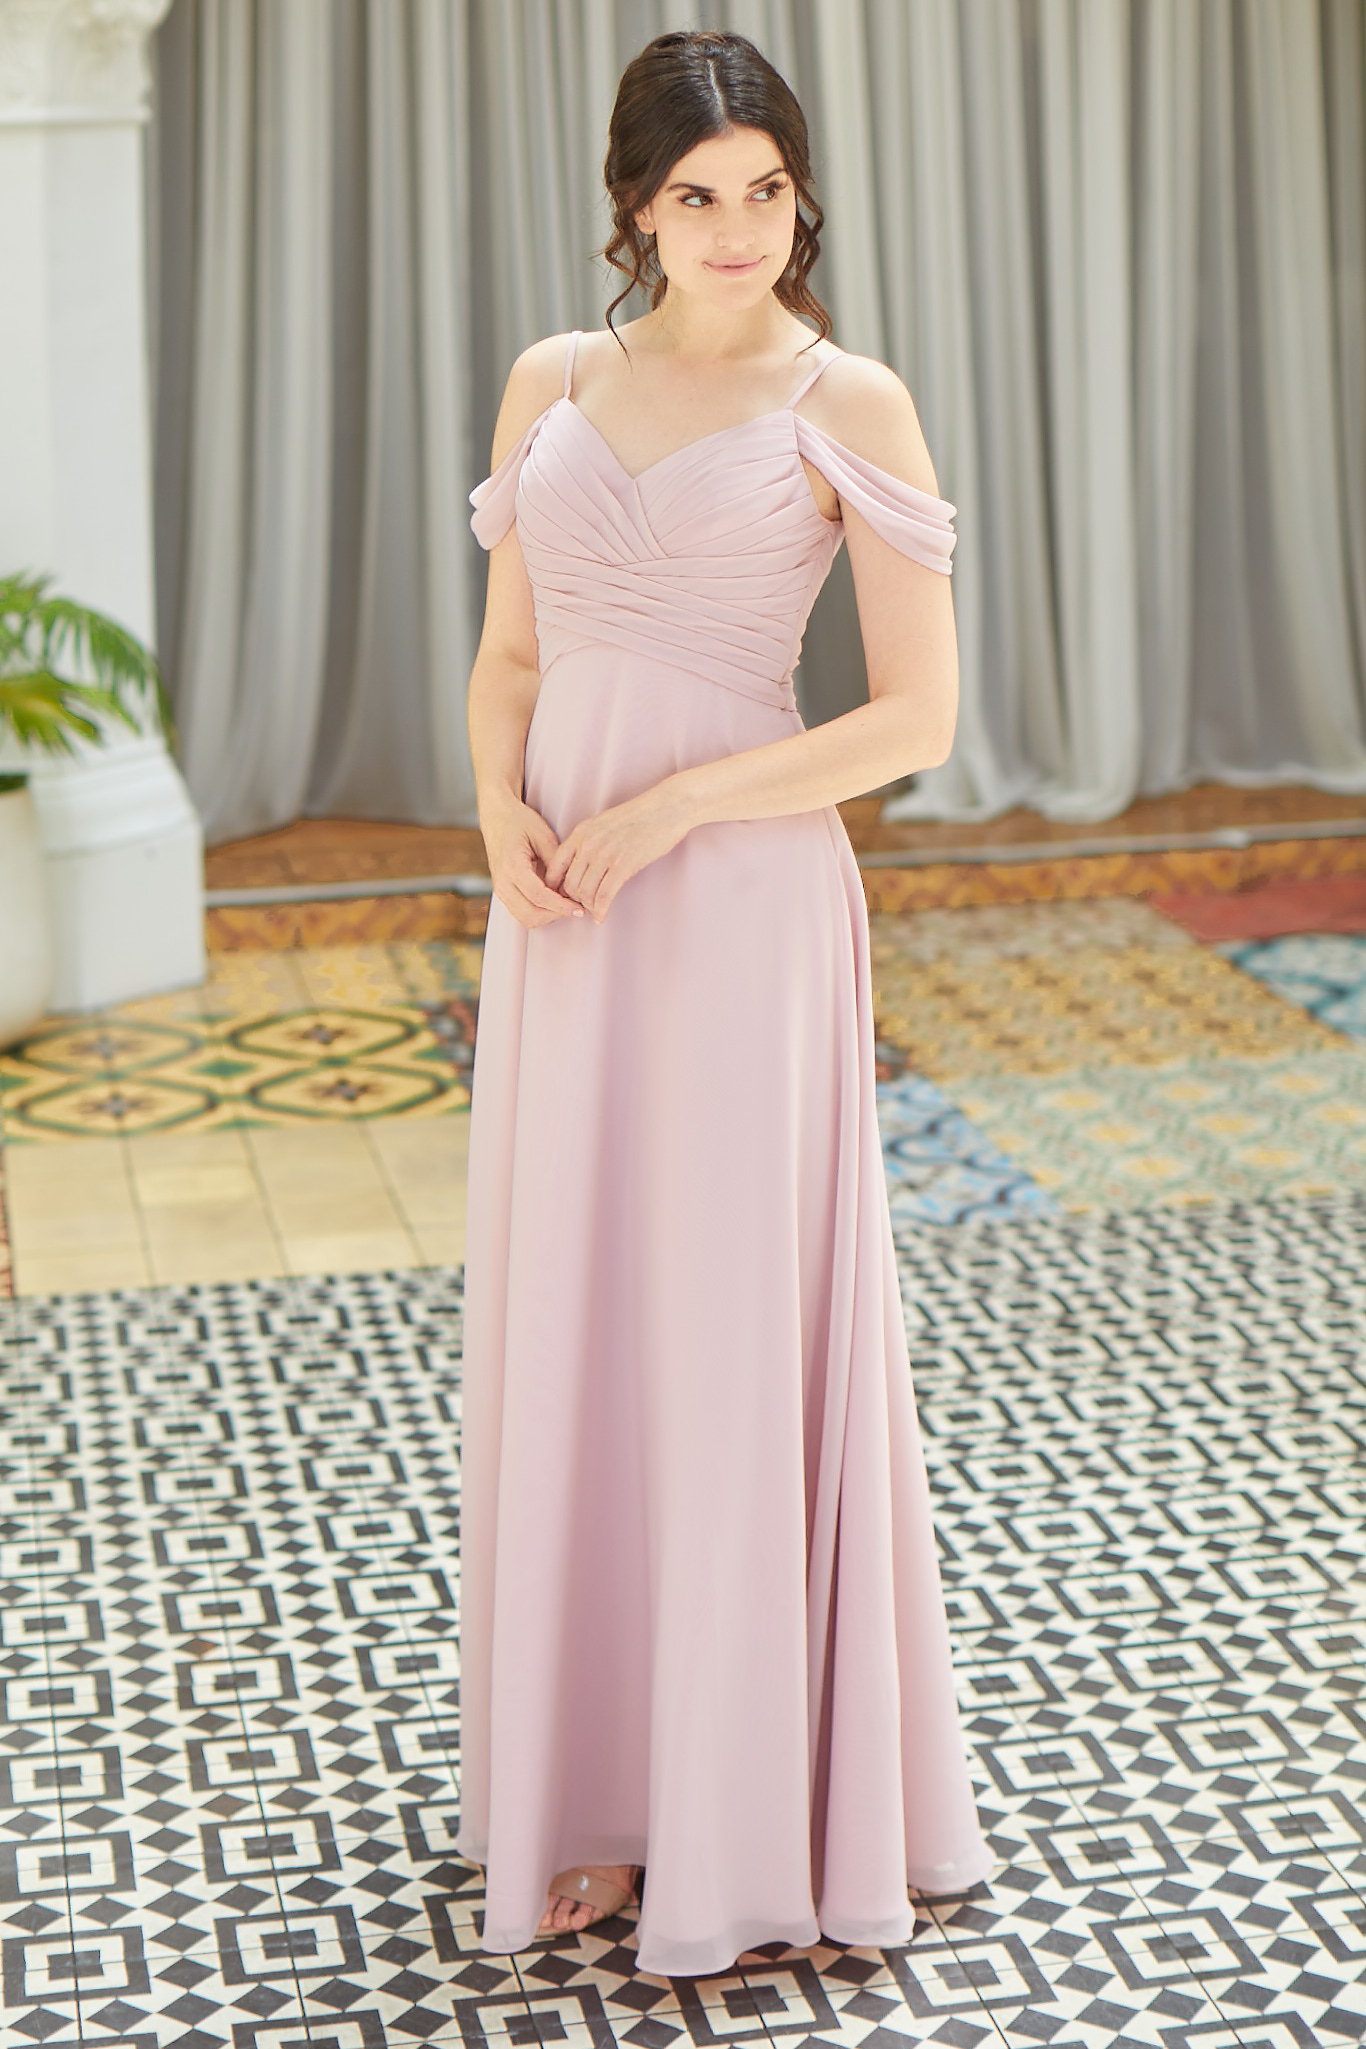 Woman in long pink dress